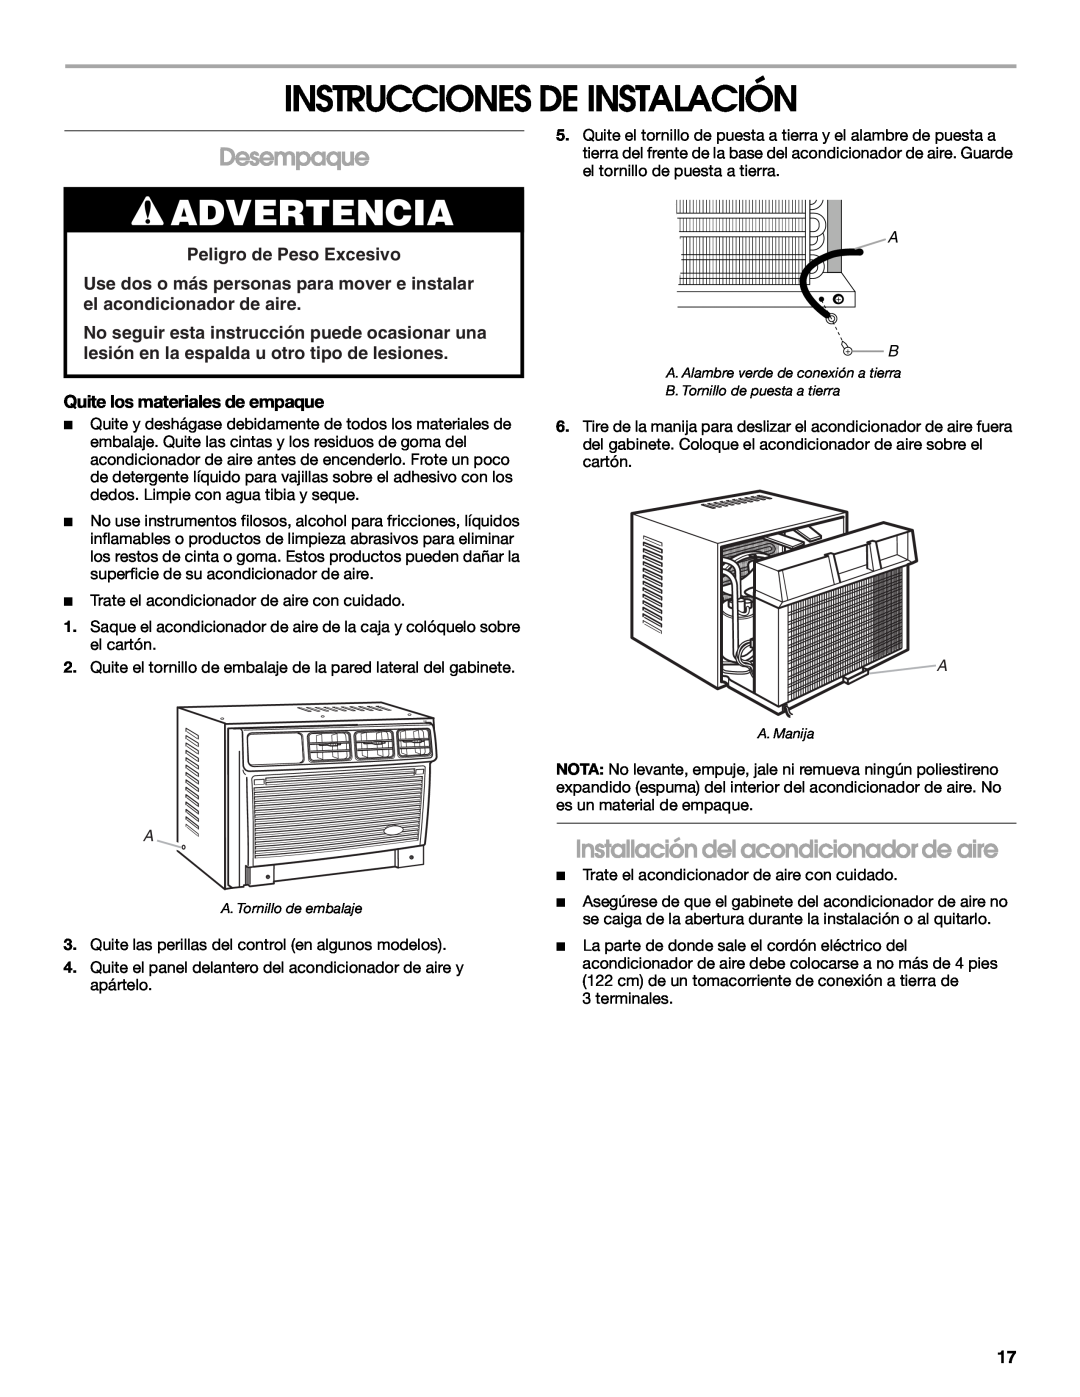 Whirlpool ACE082XP1 manual Instrucciones De Instalación, Desempaque, Installación del acondicionador de aire, Advertencia 